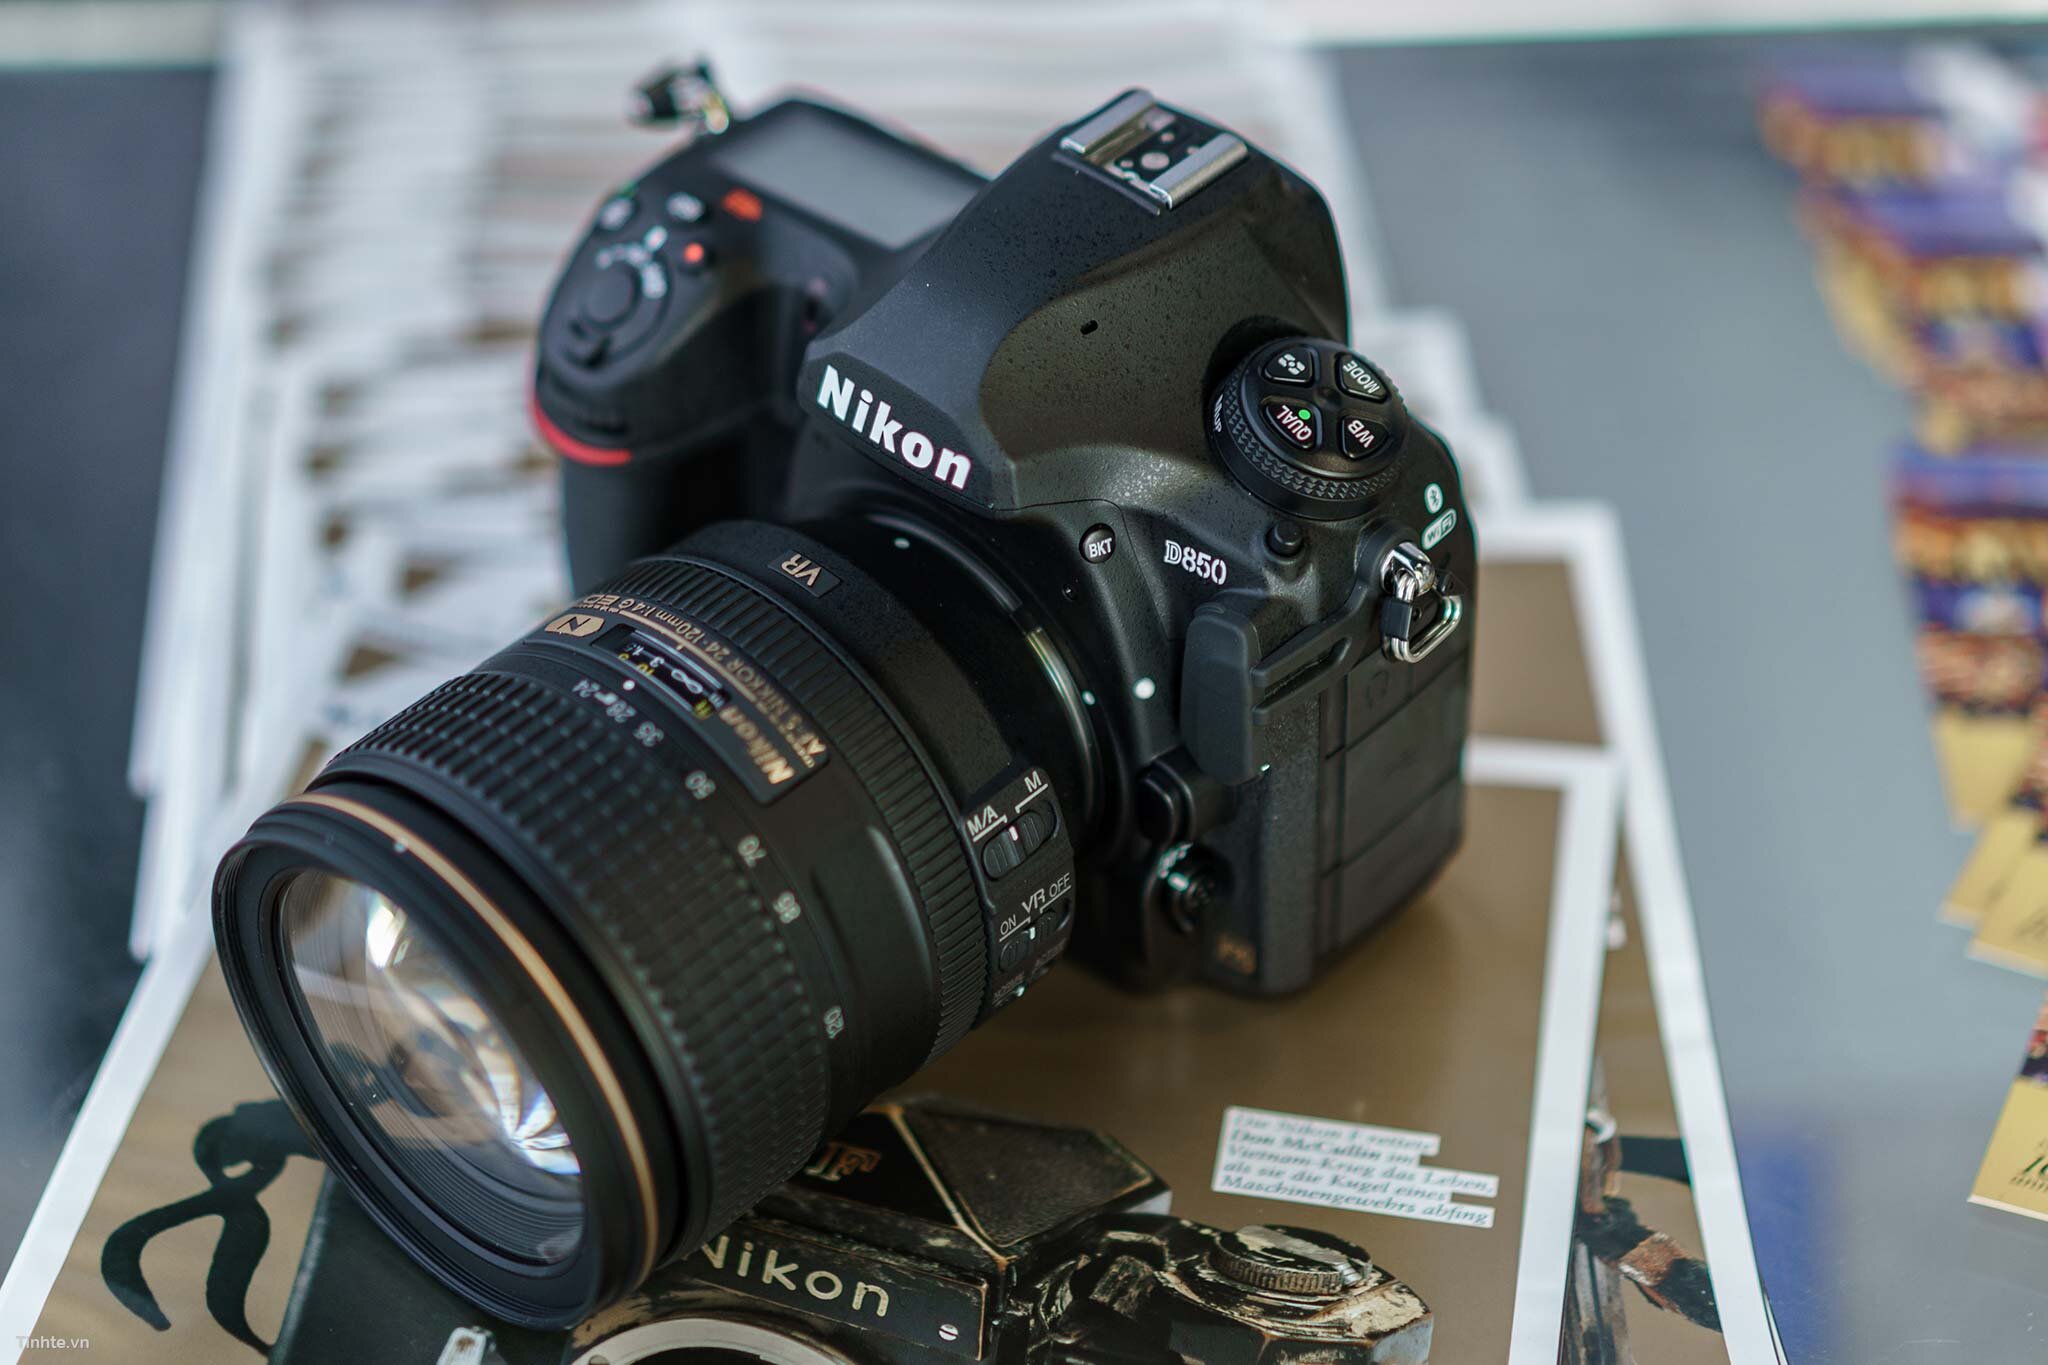 Alt + Caption: Mọi chi tiết thiết kế của Nikon D850 đều rất khoa học và tinh tế